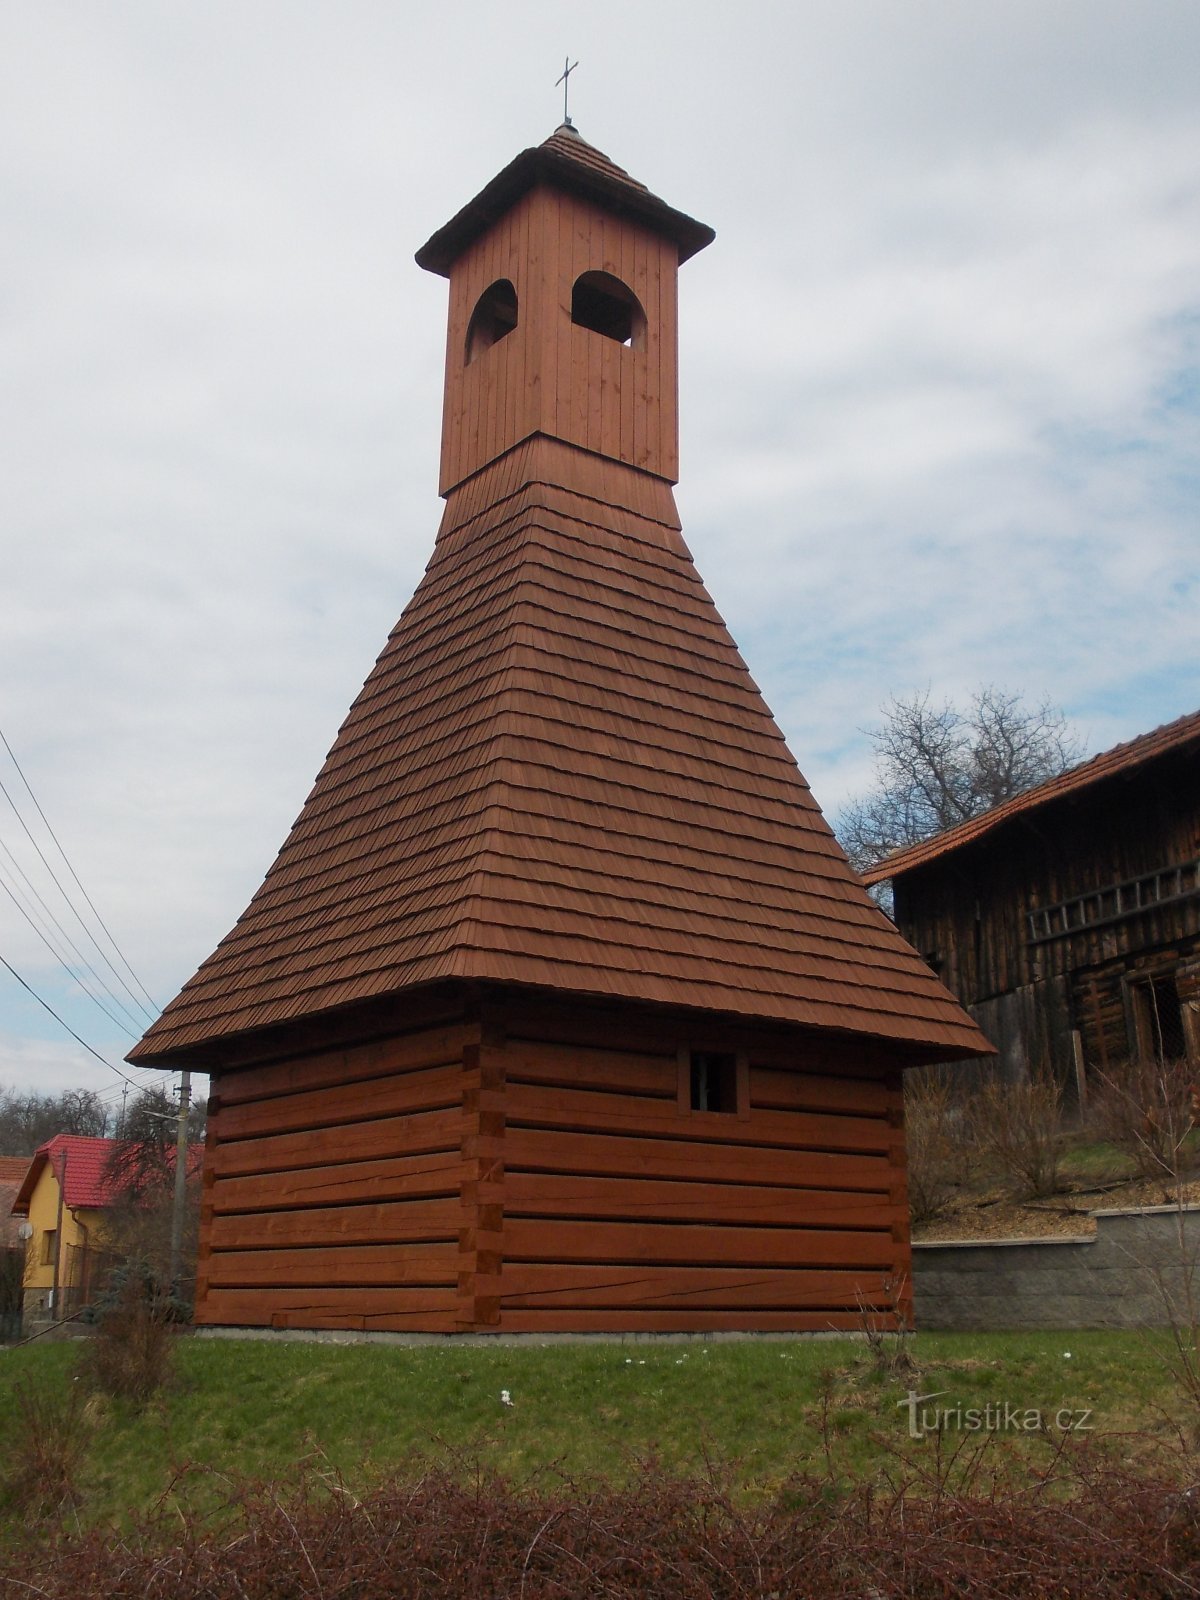 原始木制钟楼的复制品